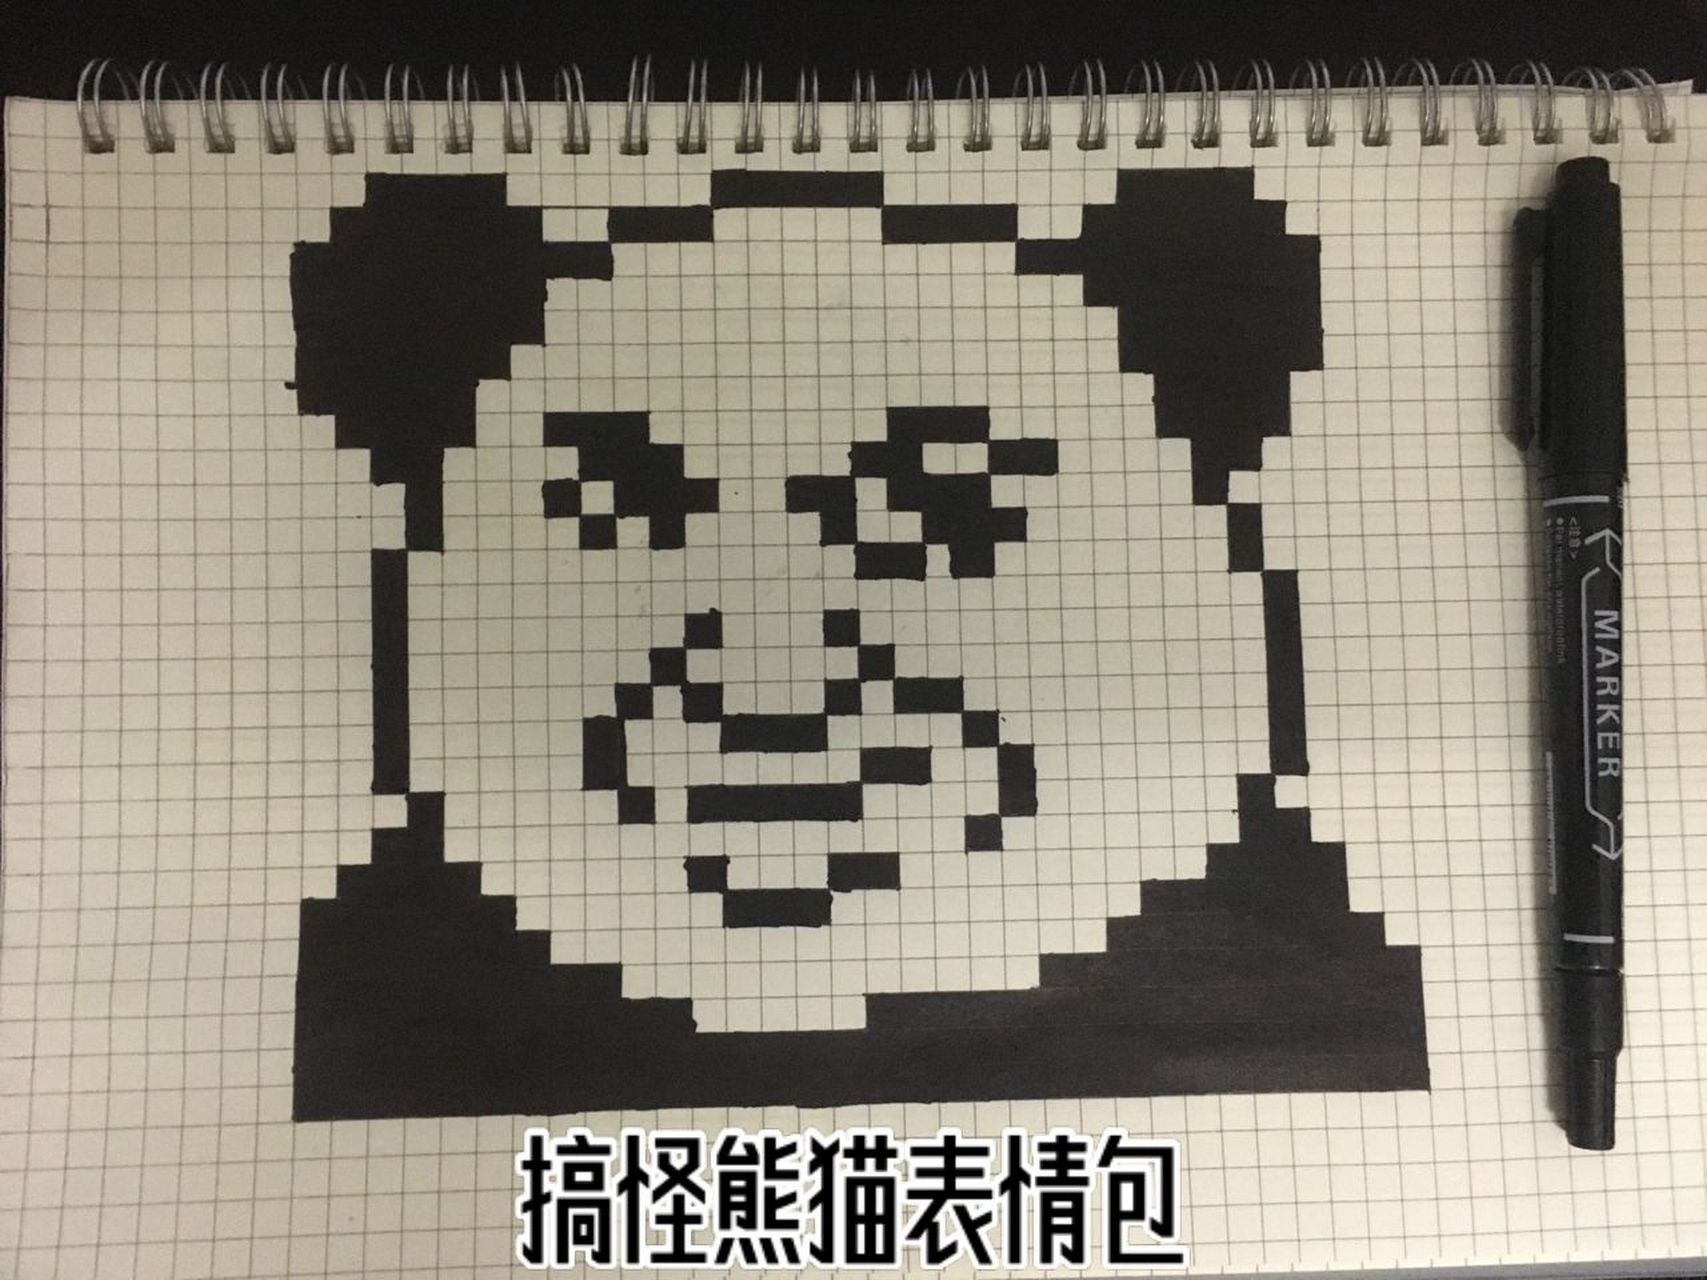 搞怪熊猫表情包&方格画 搞怪熊猫表情包方格画 本子:b5 油性黑色记号